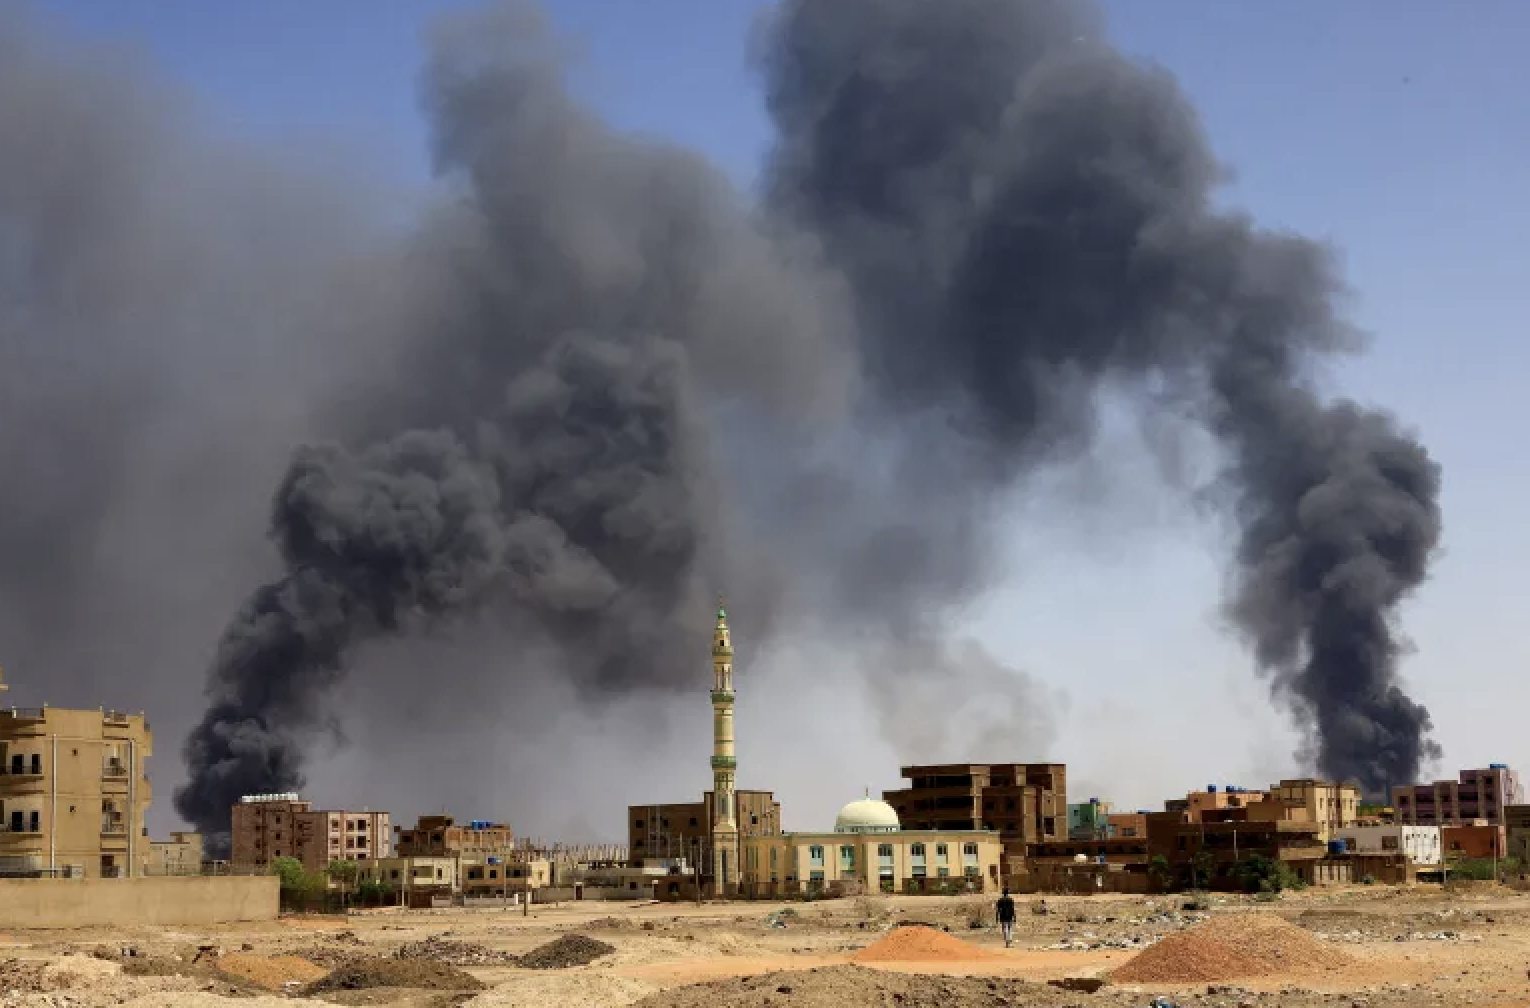 Crisis in Sudan: Urgent Call for De-Escalation in El Fasher